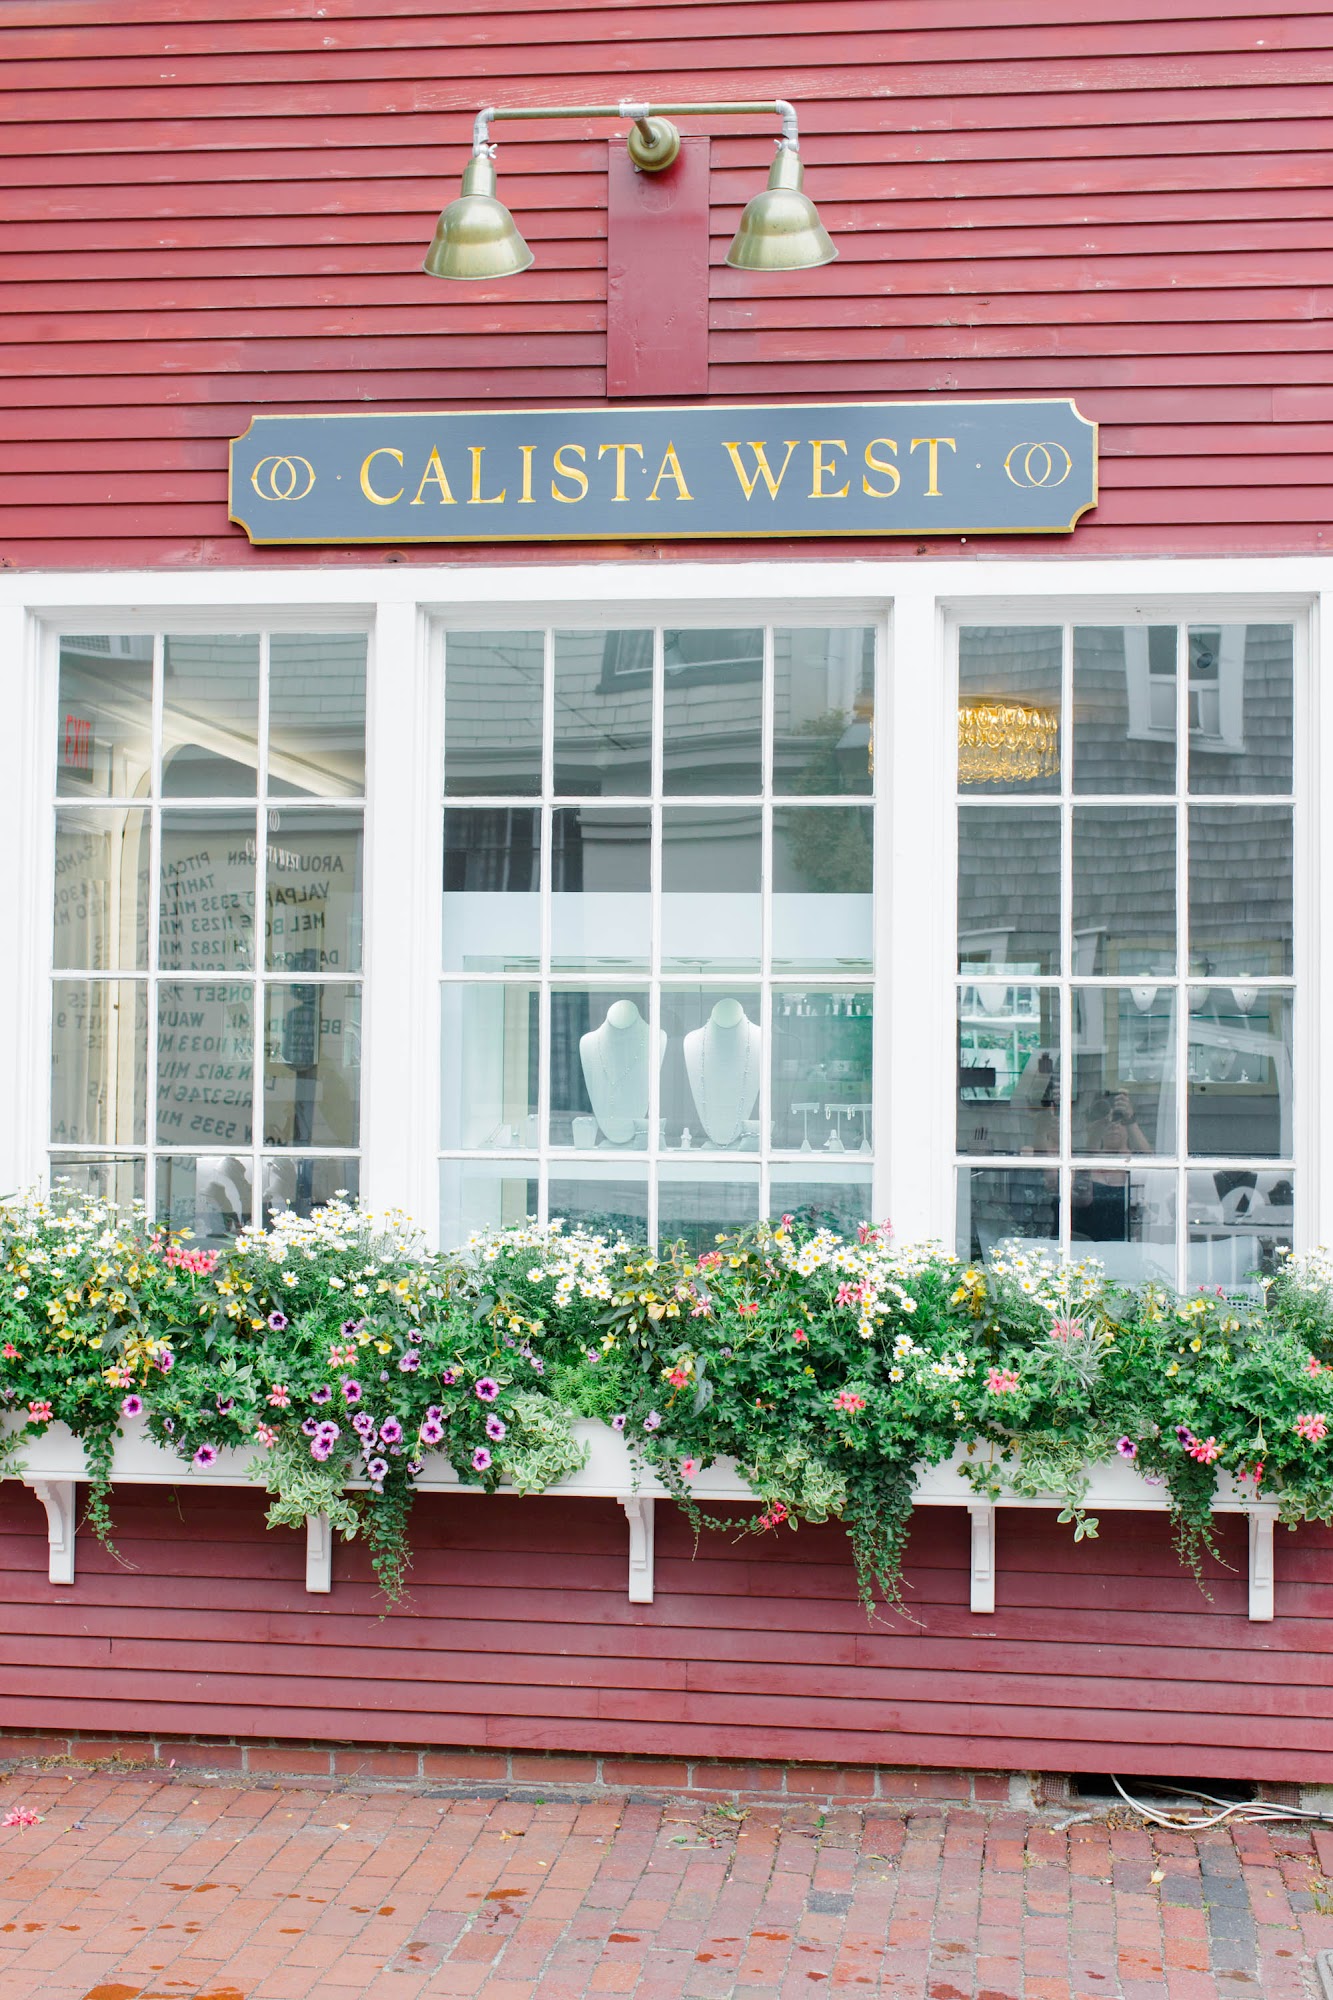 Calista West 12 Main St, Nantucket Massachusetts 02554